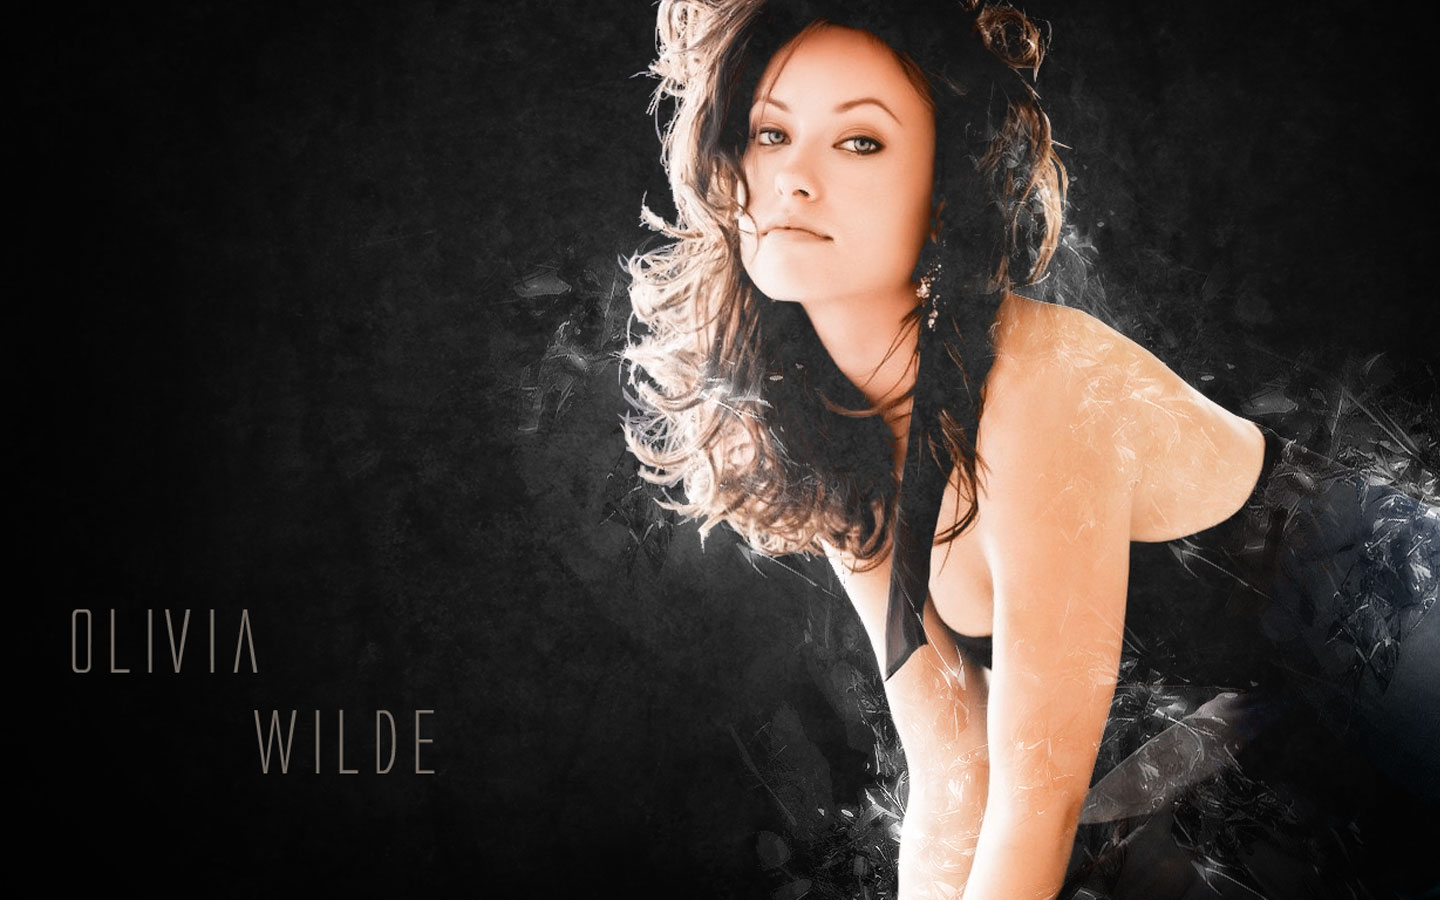 Olivia Wilde Wallpaper 1080p - WallpaperSafari